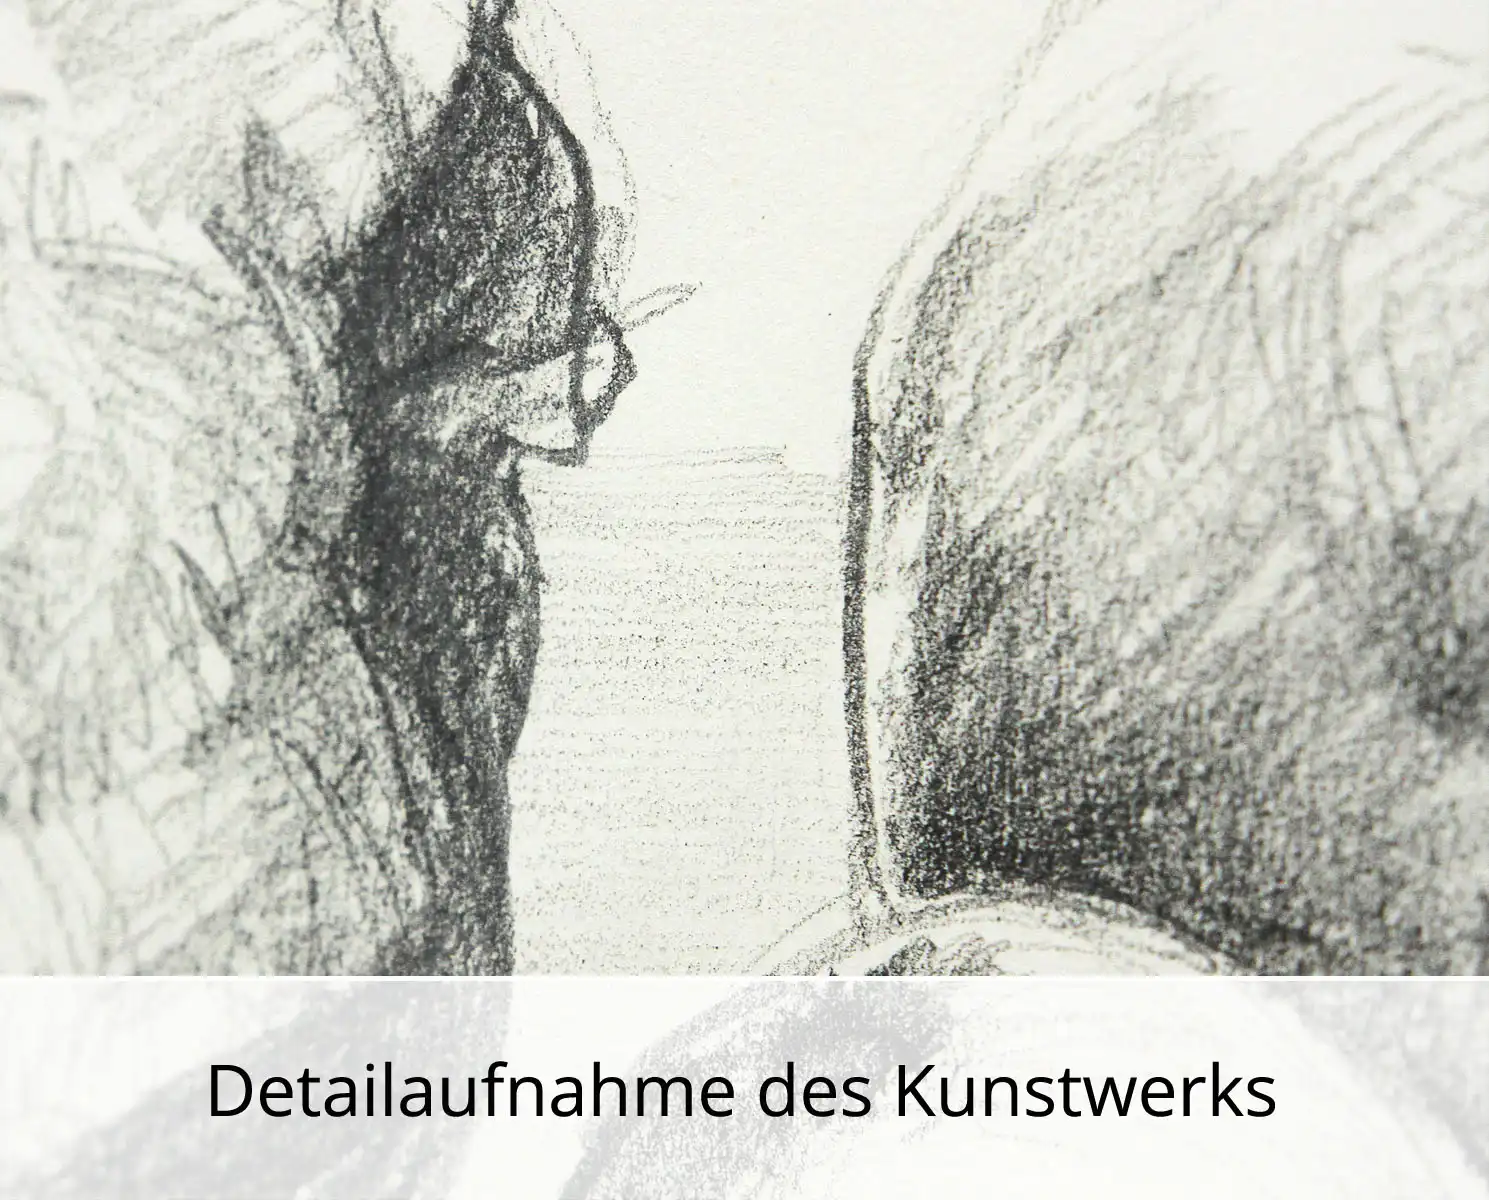 F.O. Haake: "Stillleben mit toter Meise", originale Zeichnung/Unikat auf Papier